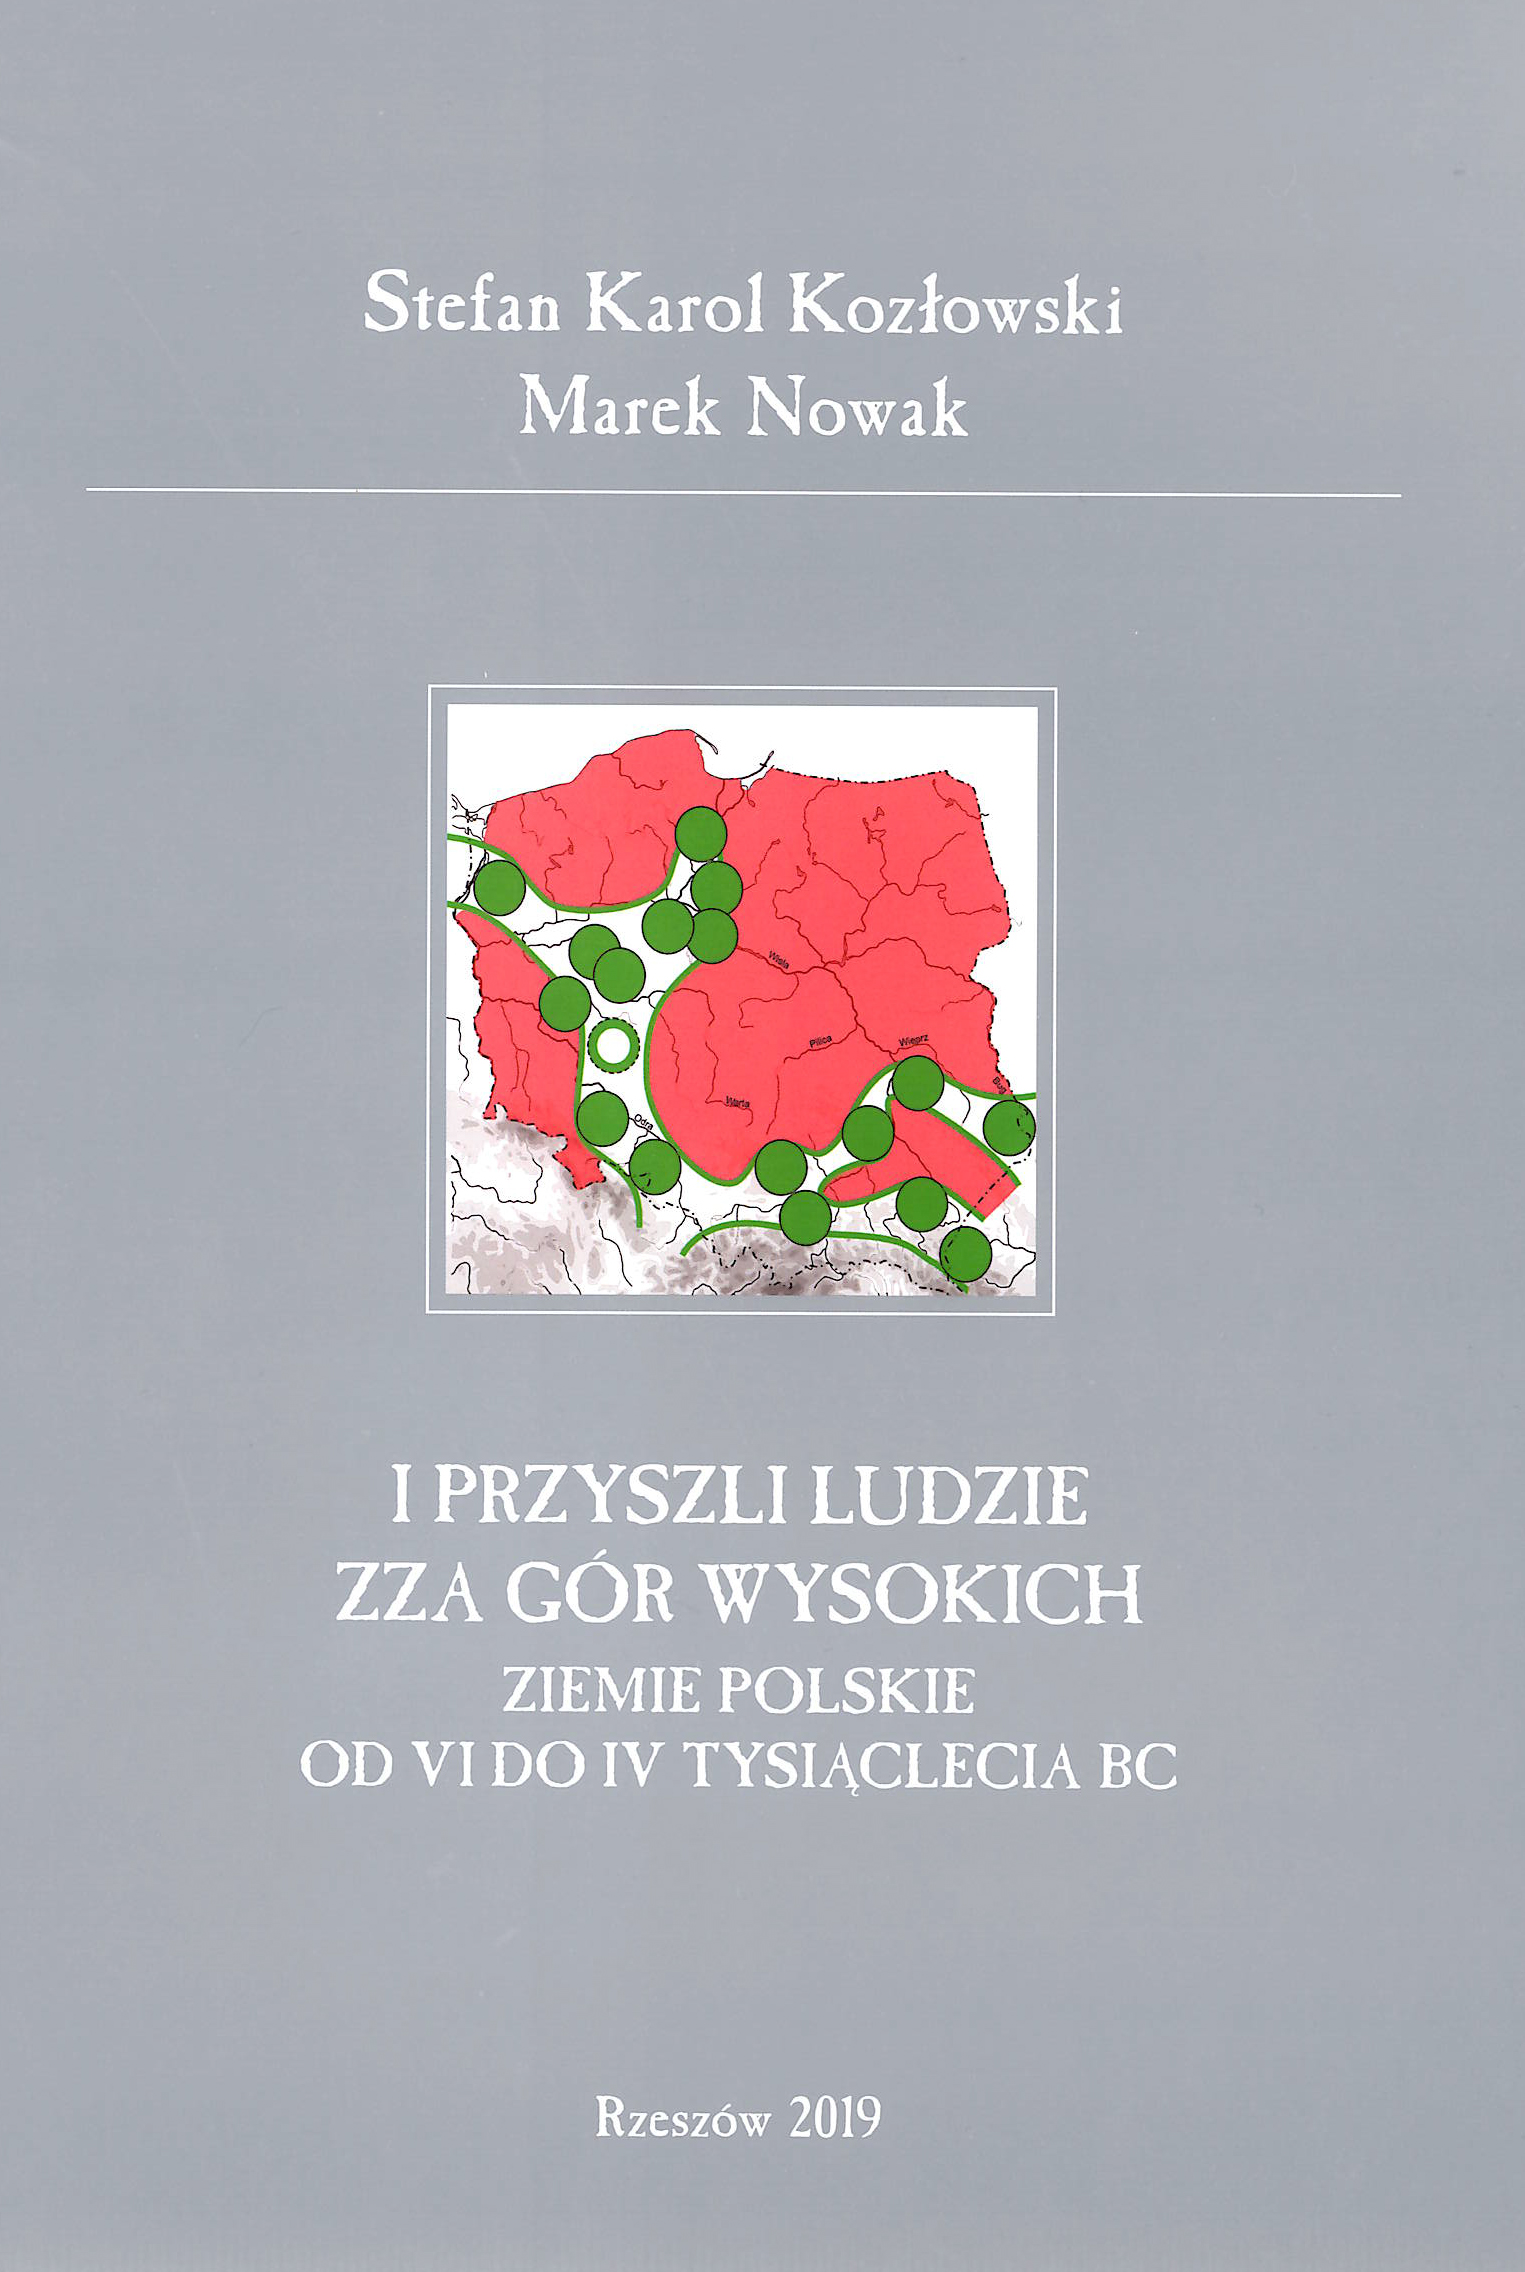 Kozlowski_Nowak.jpg [1.15 MB]